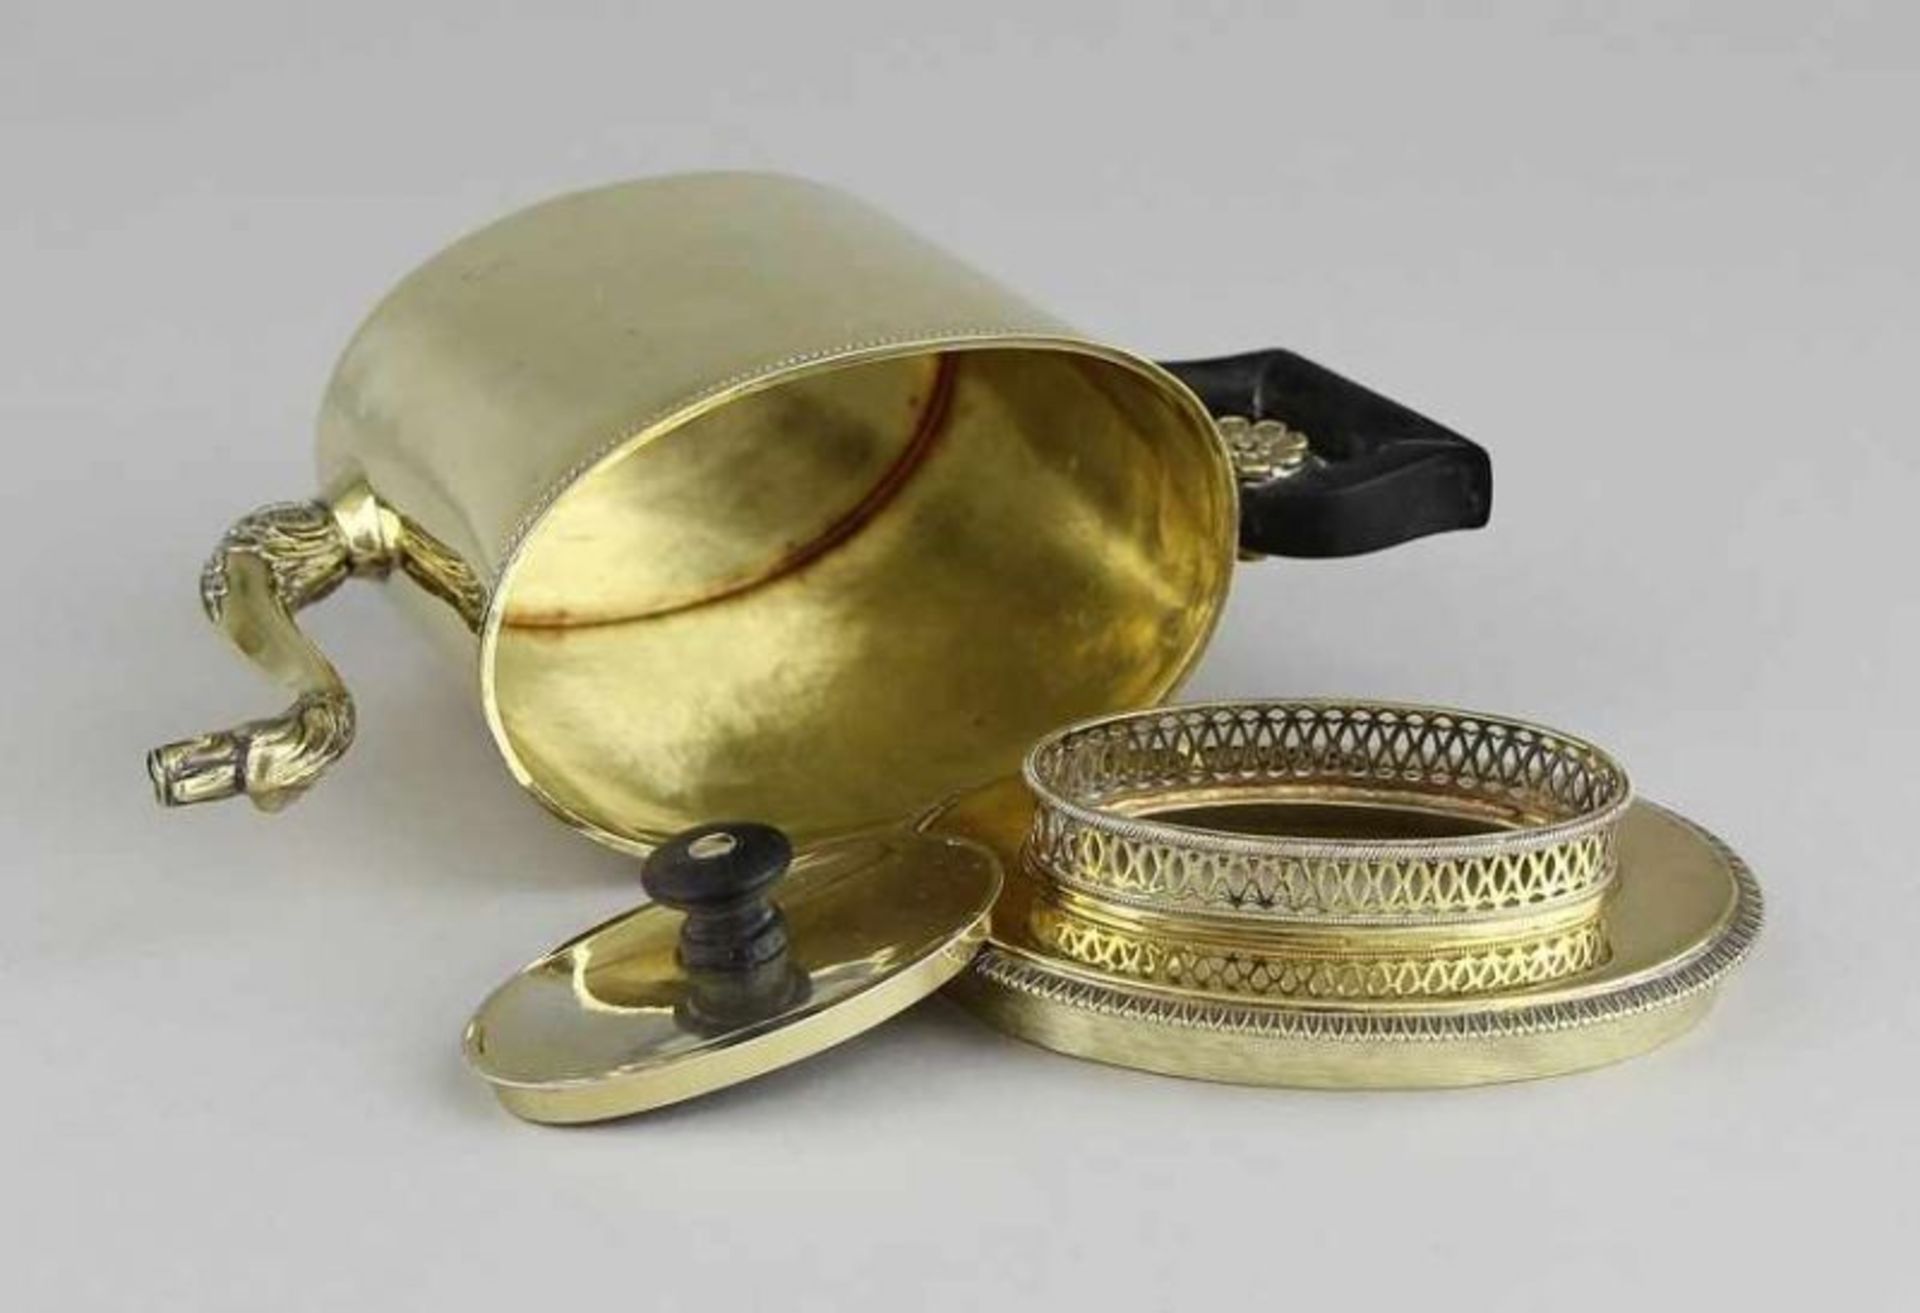 Vermeil - Extraktkännchen Silber 950 getrieben, gegossen, gesägt und feuervergoldet, ovale - Image 4 of 6